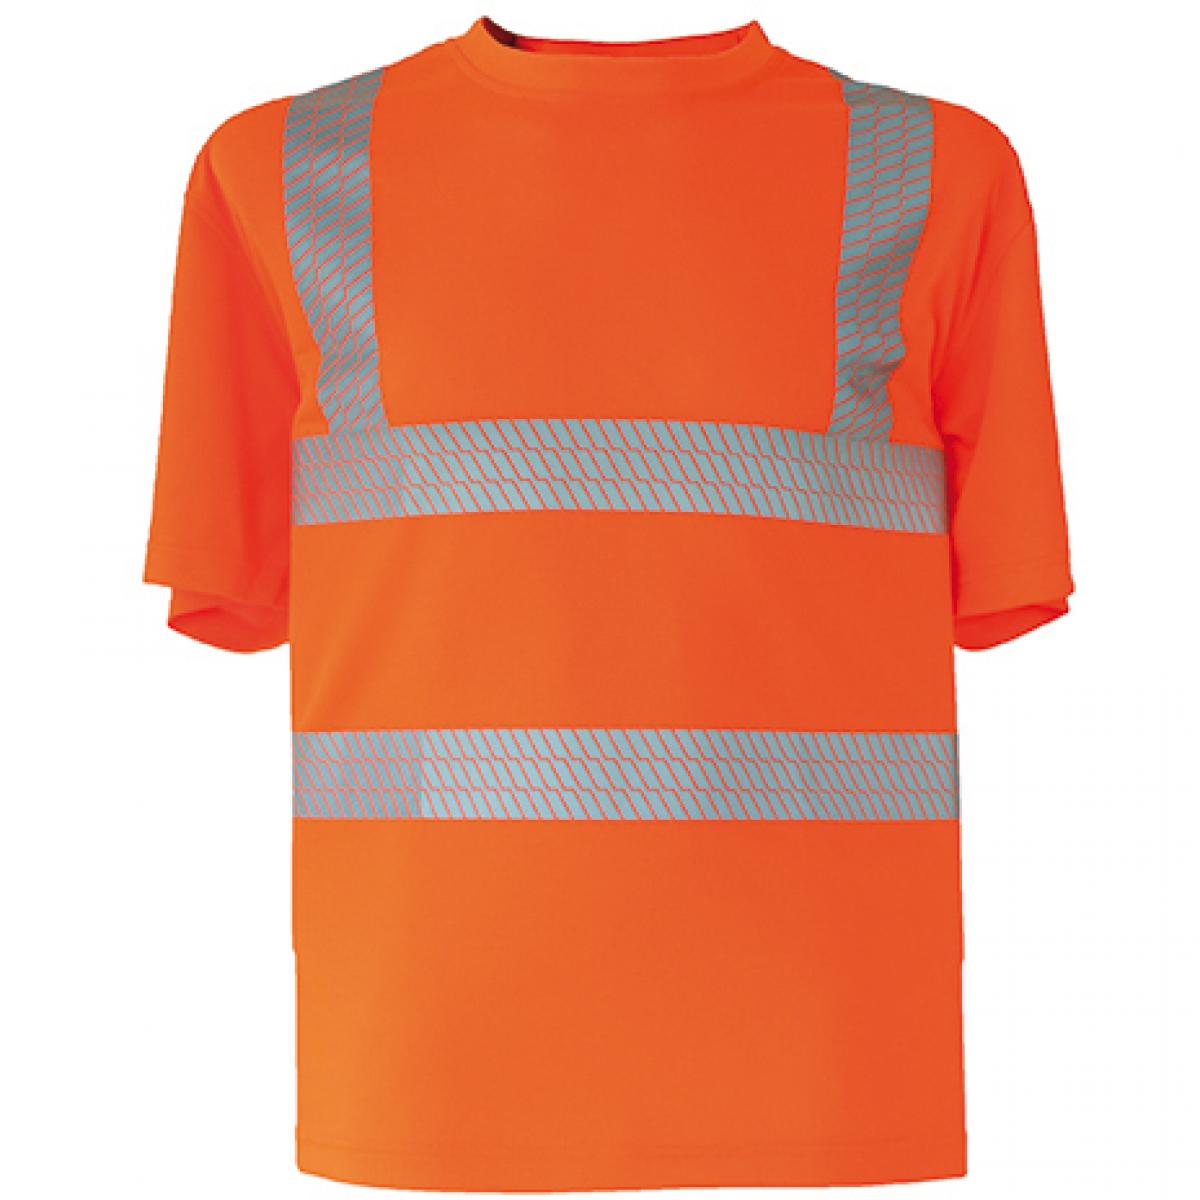 Hersteller: Korntex Herstellernummer: KXBRS Artikelbezeichnung: Herren Hi-Viz Broken Reflective Arbeits T-Shirt EN ISO 20471 Farbe: Signal Orange